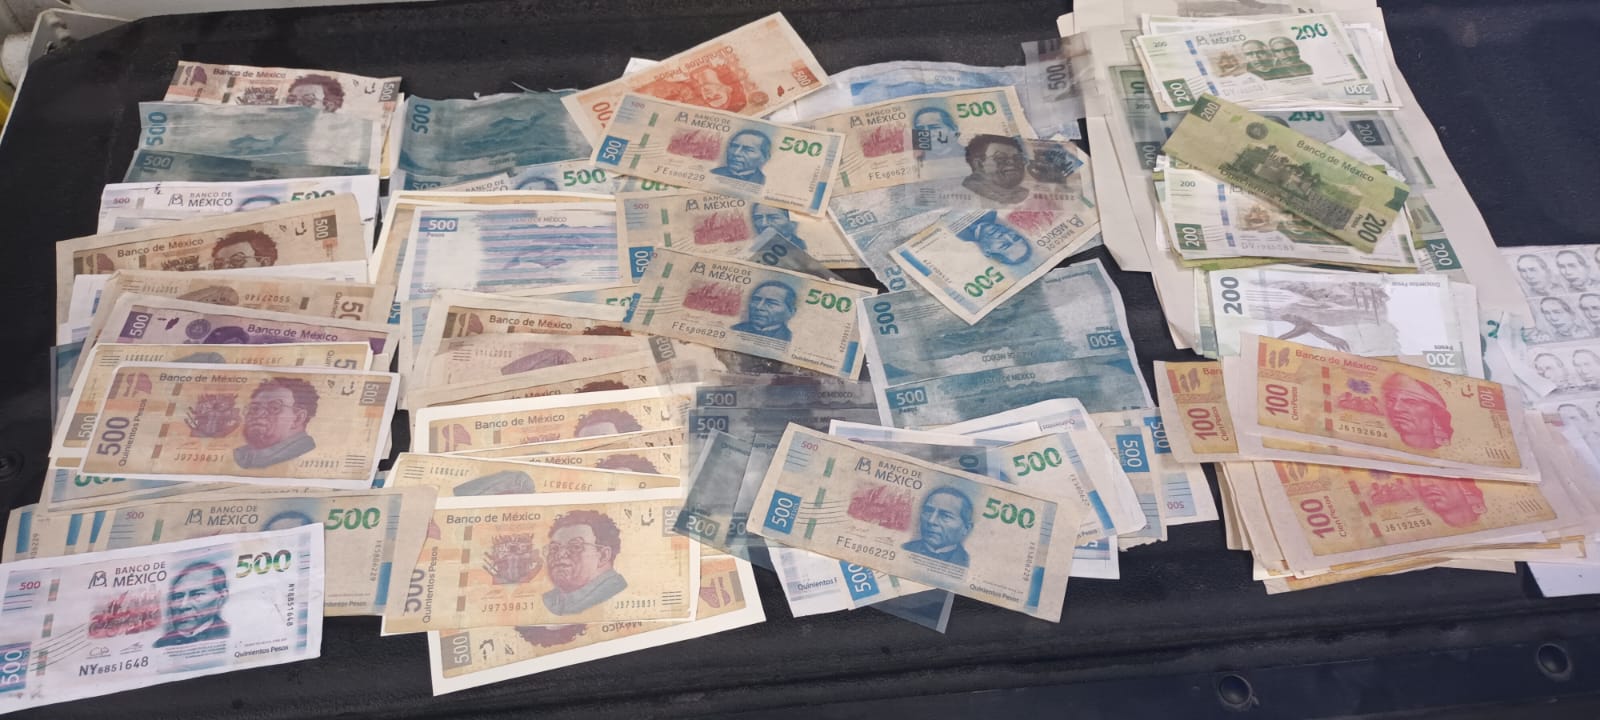 La mujer cargaba con un total de 212 billetes falsos de diferentes denominaciones, incluyendo 77 de 500 pesos, 55 de 100 pesos y 80 de 200 pesos. Foto: Policía de Monterrey.